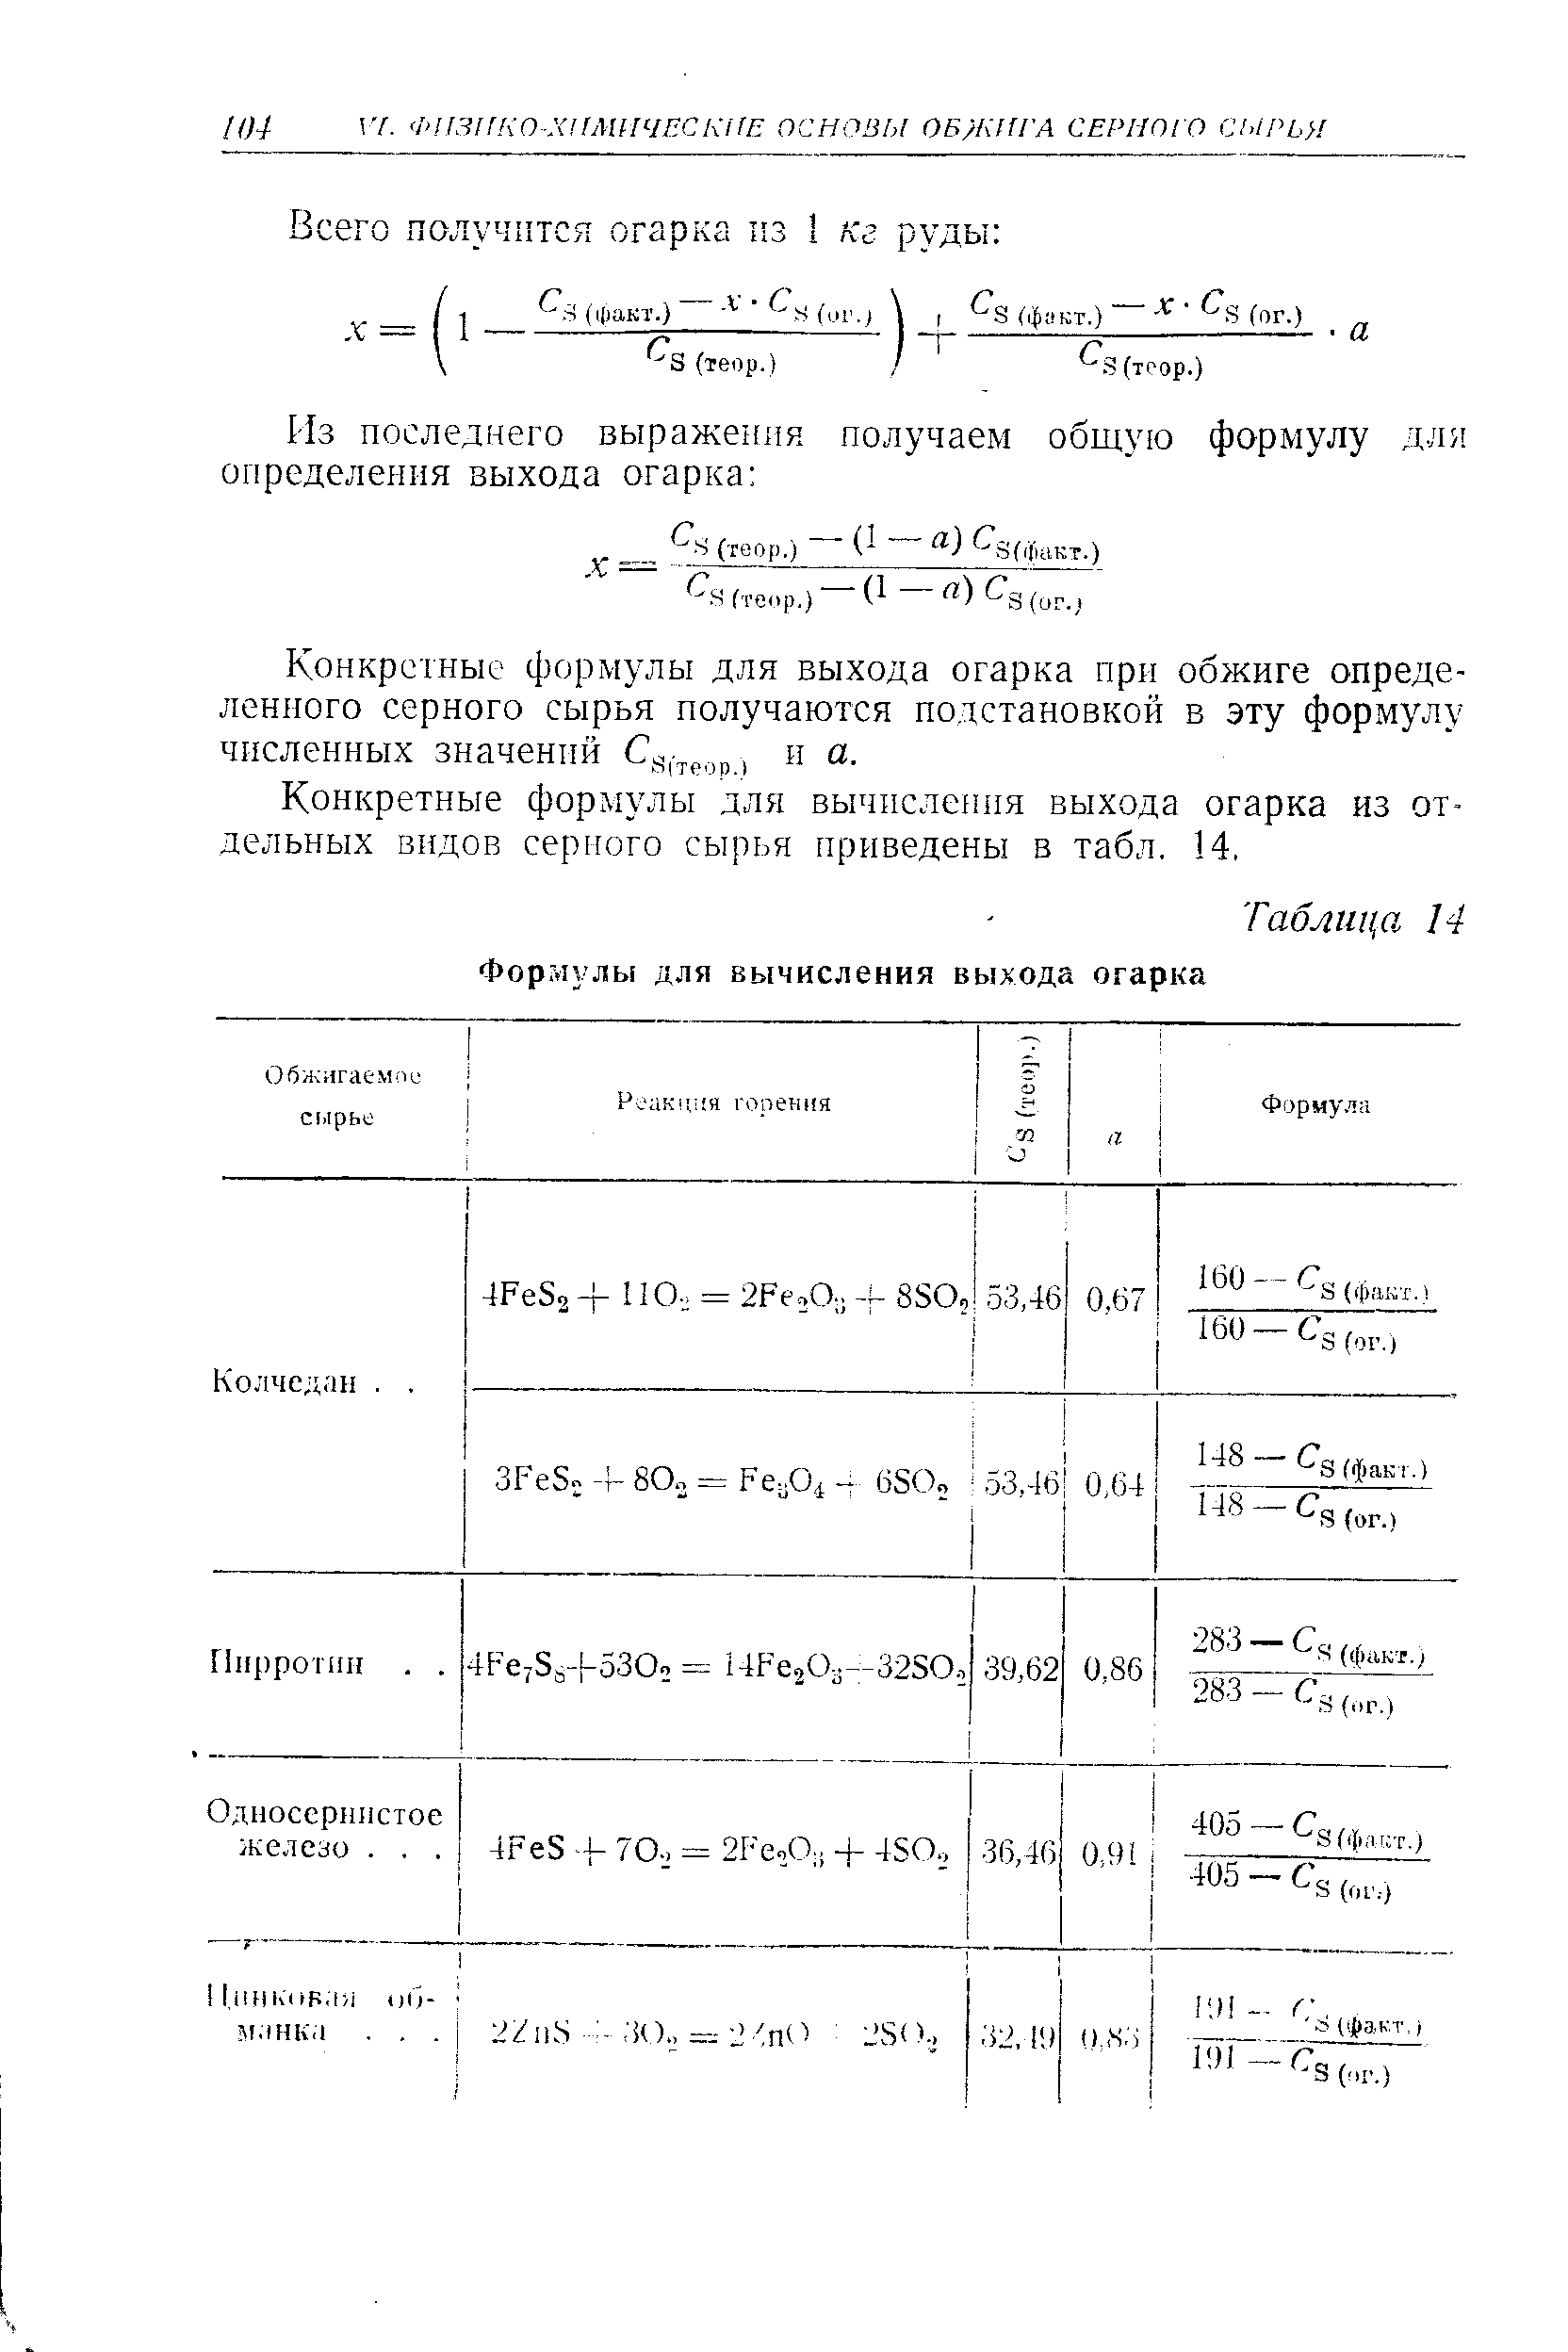 Конкретные формулы для выхода огарка при обжиге определенного серного сырья получаются подстановкой в эту формулу численных значений , и а.